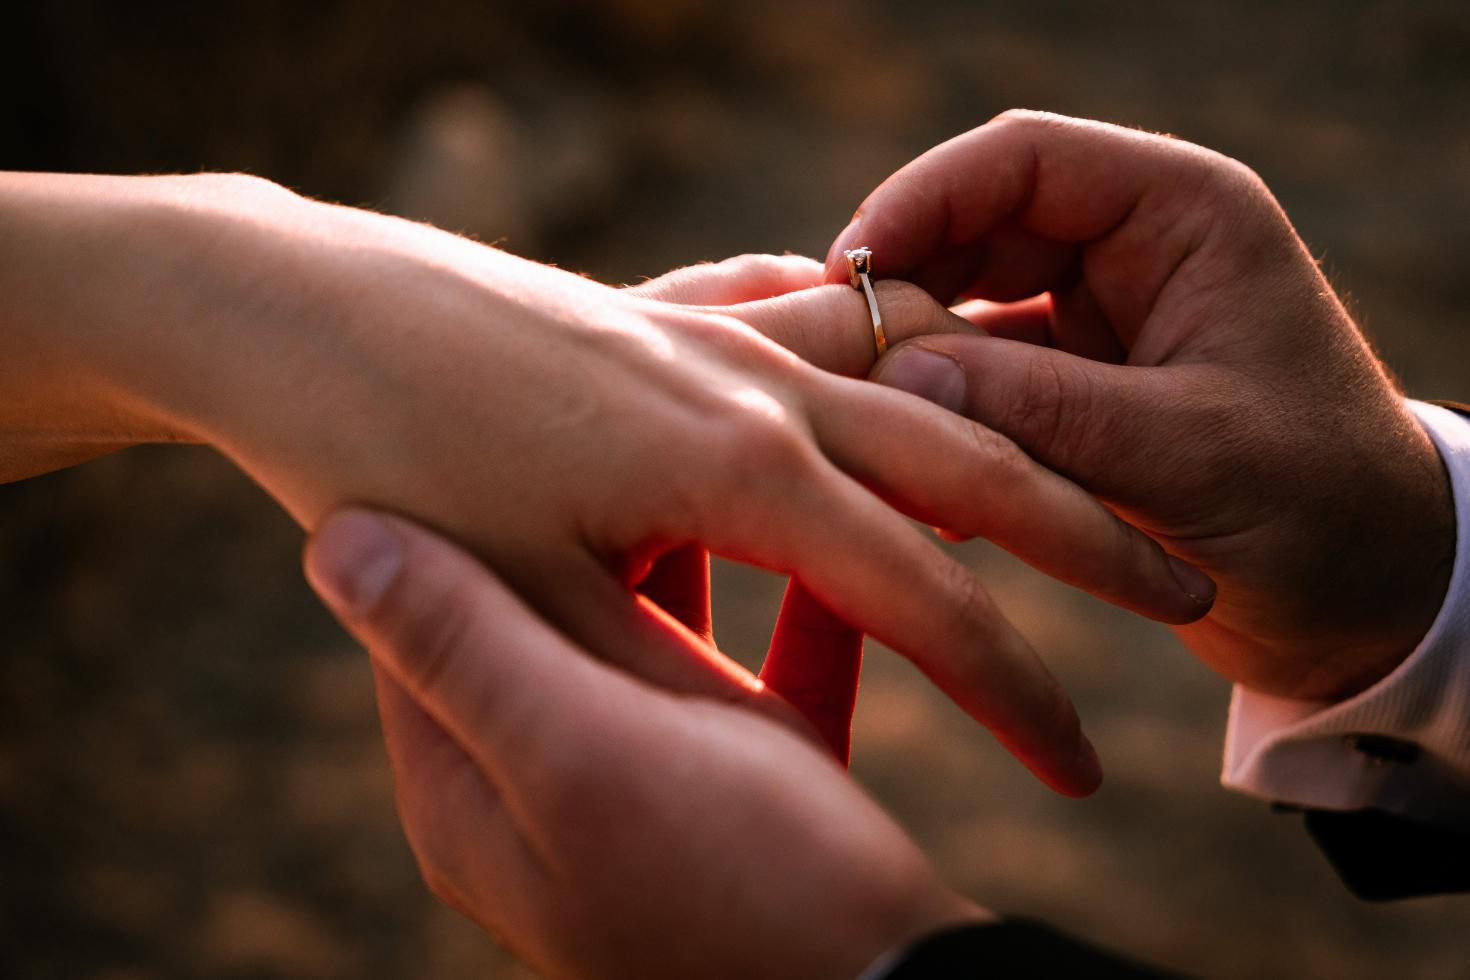 רעיונות להצעת נישואין - הצעות נישואין מקוריות שלא חשבתם עליהן